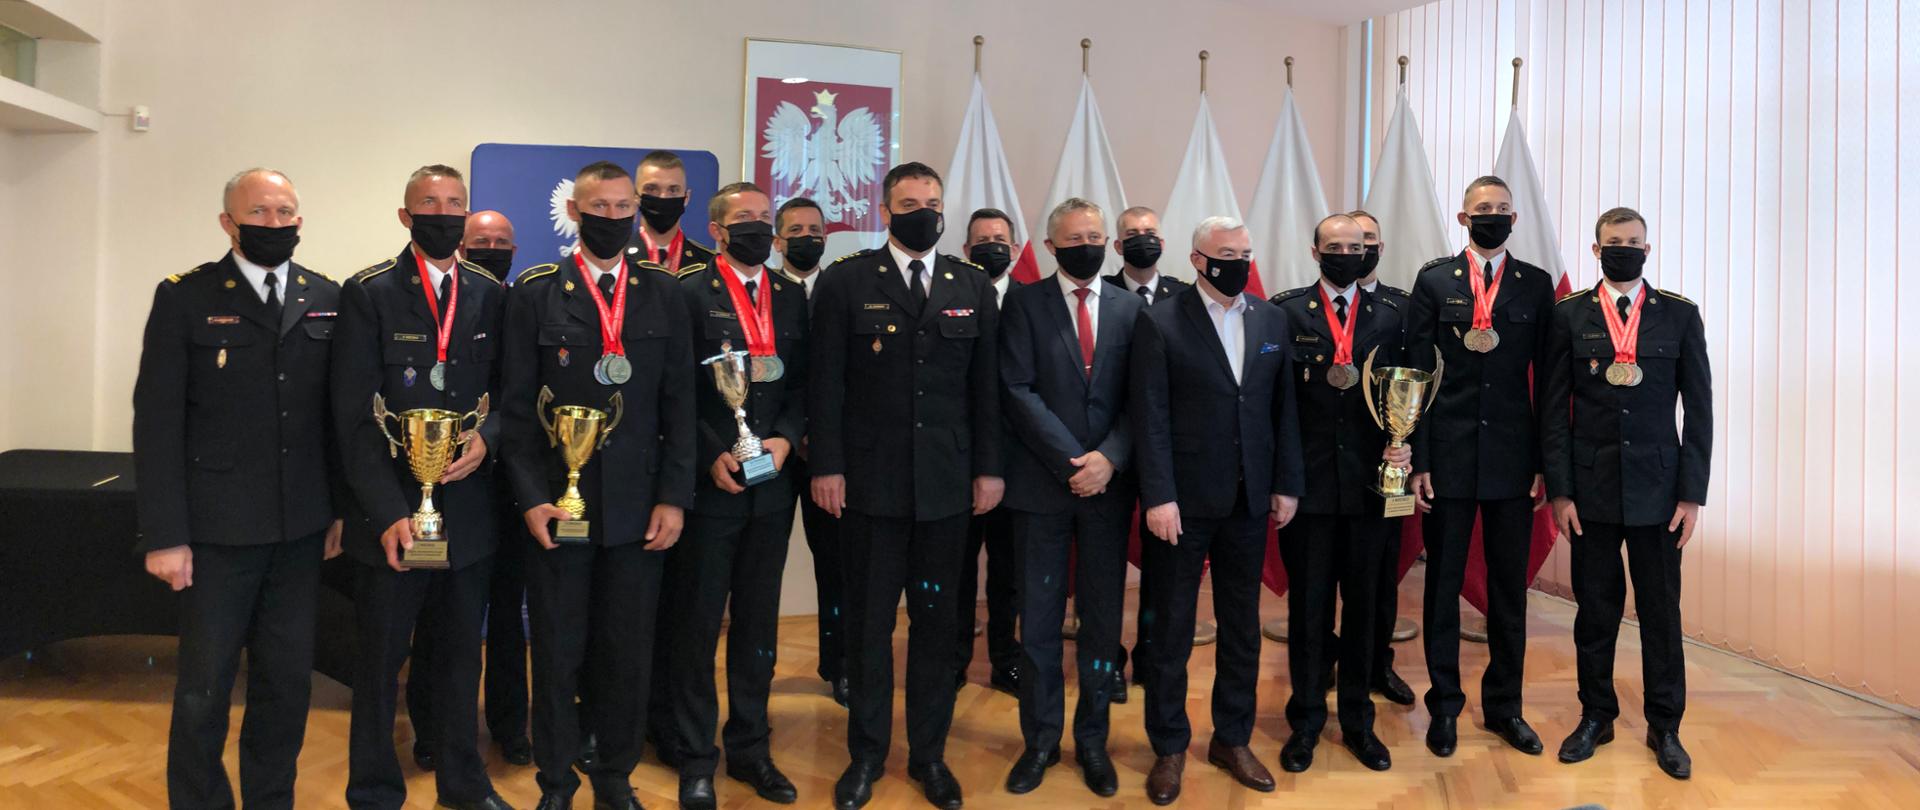 Gratulacje władz województwa świętokrzyskiego dla strażaków – złotych medalistów Mistrzostw Polski w Sporcie Pożarniczym